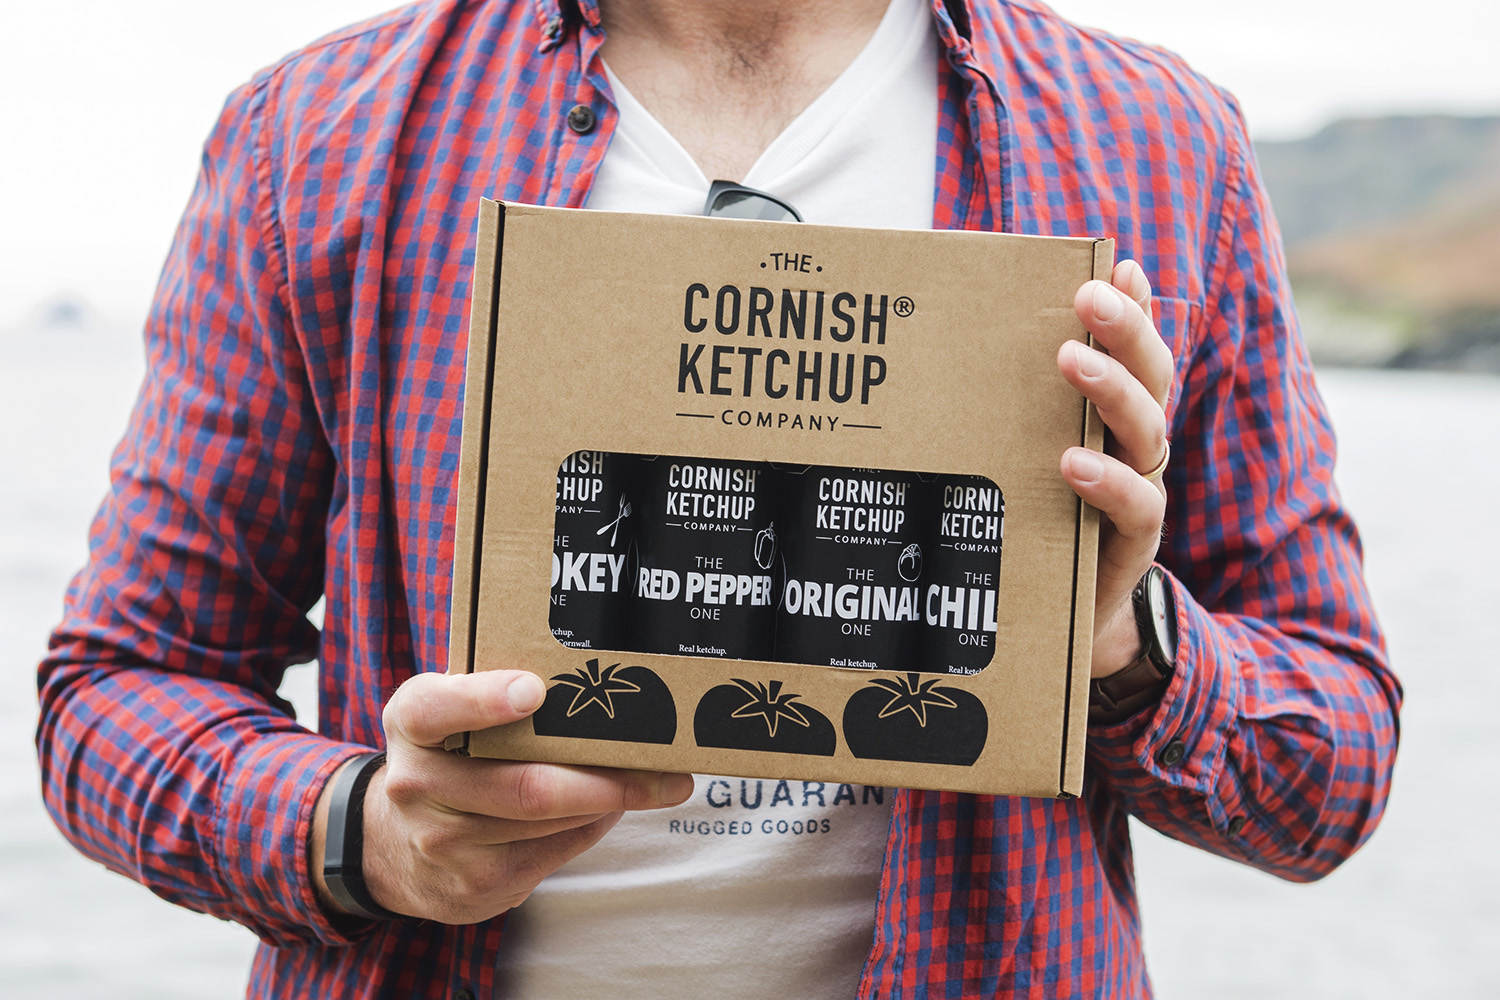 Cornish ketchup gift pack